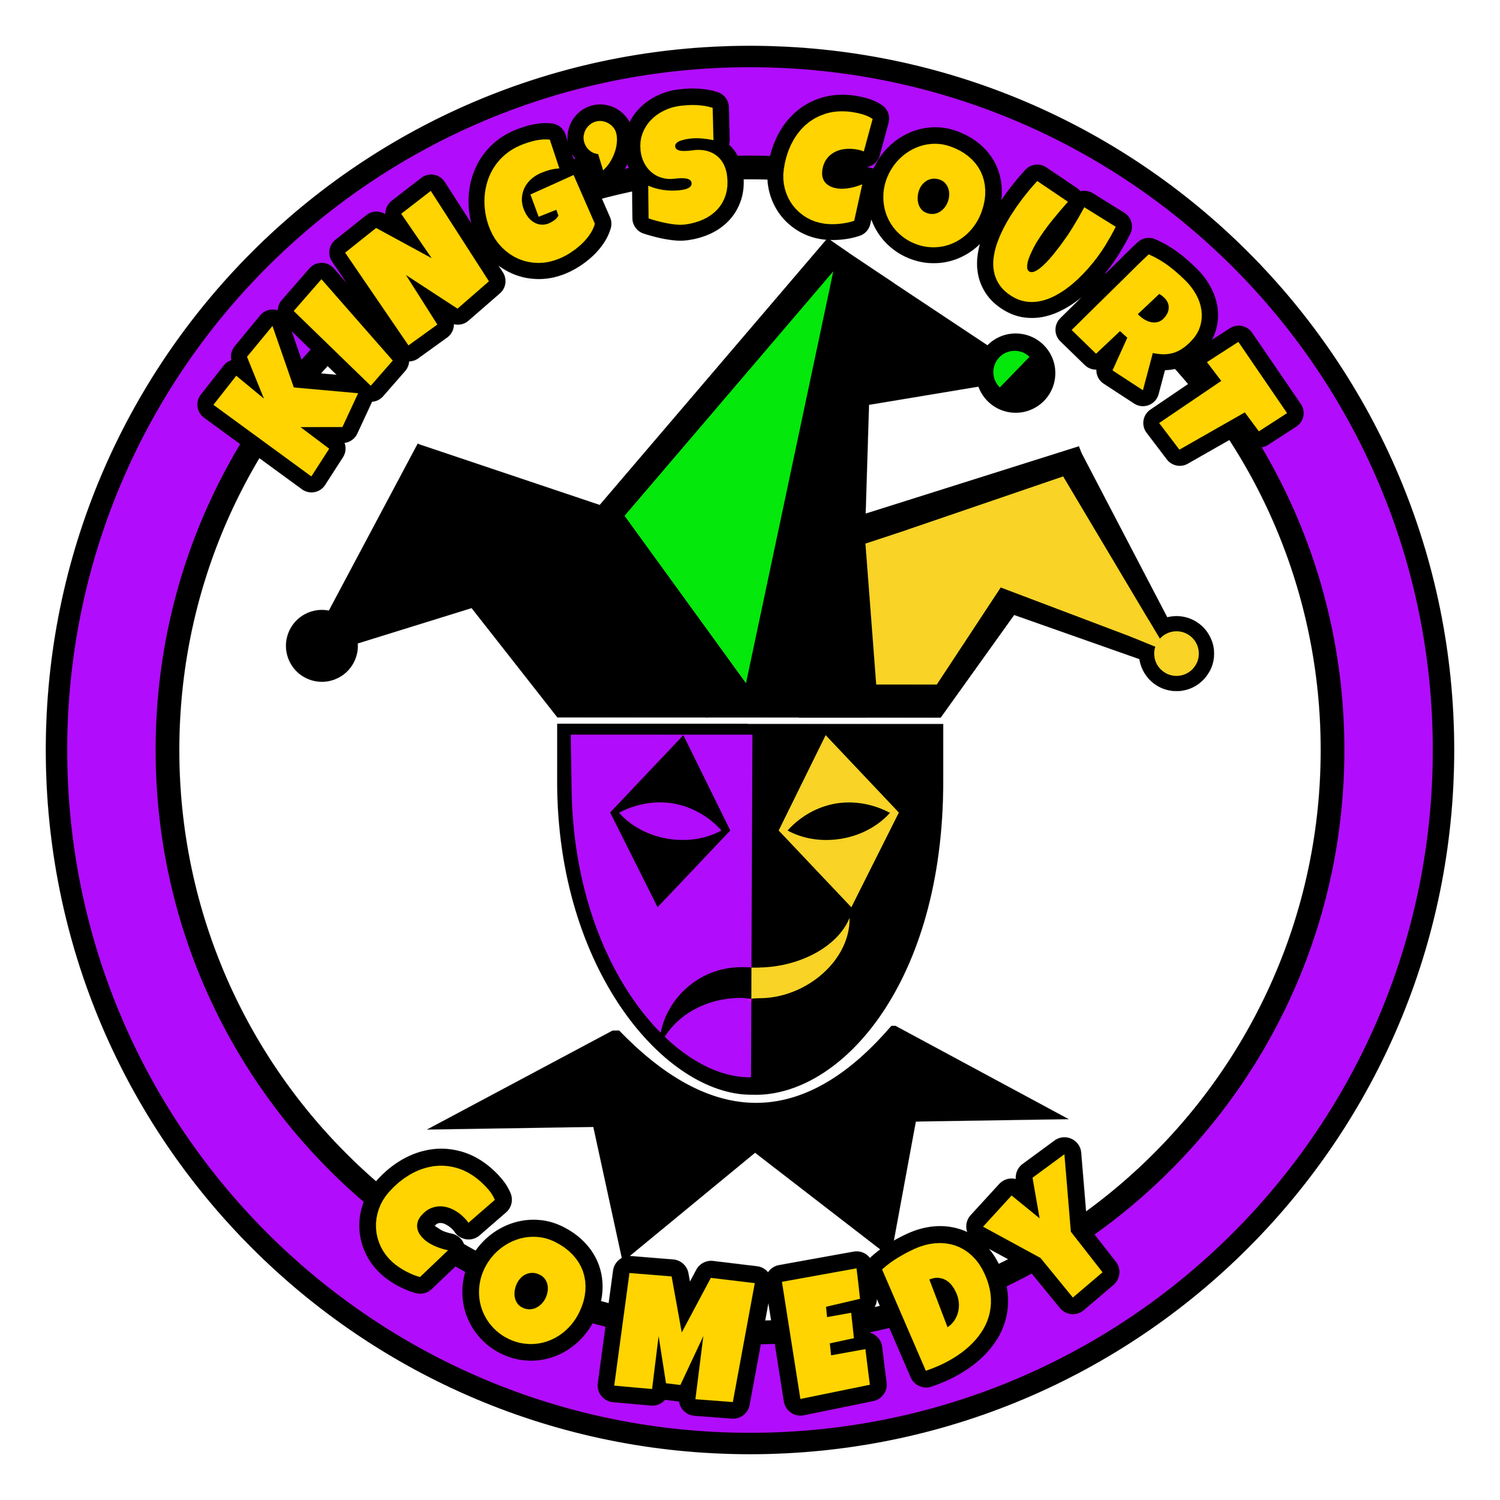 kingscourtcomedy.com